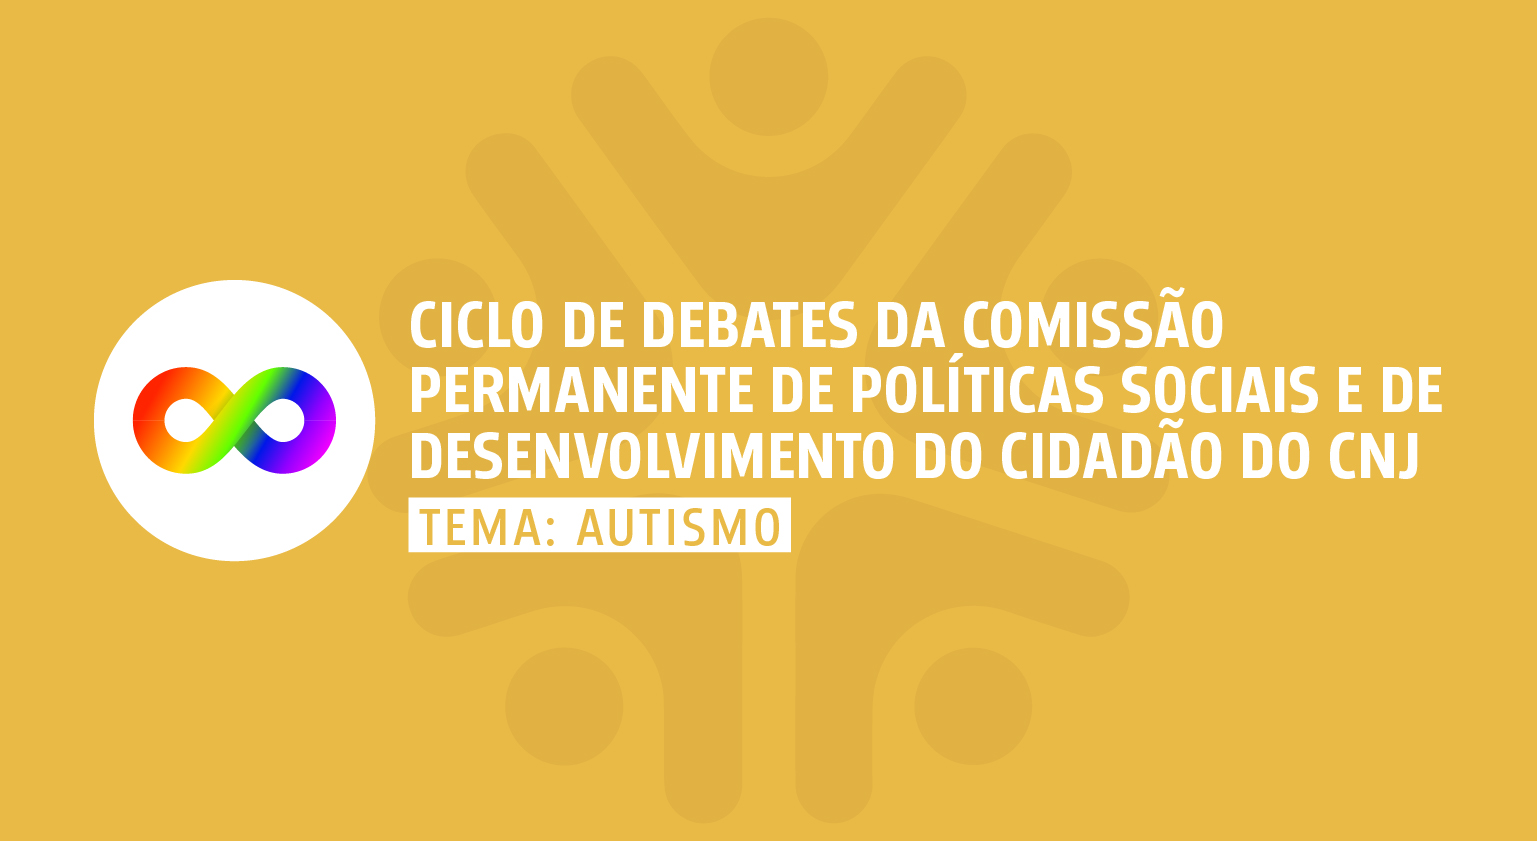 INSTITUCIONAL: “Ciclo de Debates da Comissão Permanente de Políticas Sociais e Desenvolvimento do Cidadão” estreia com o tema autismo